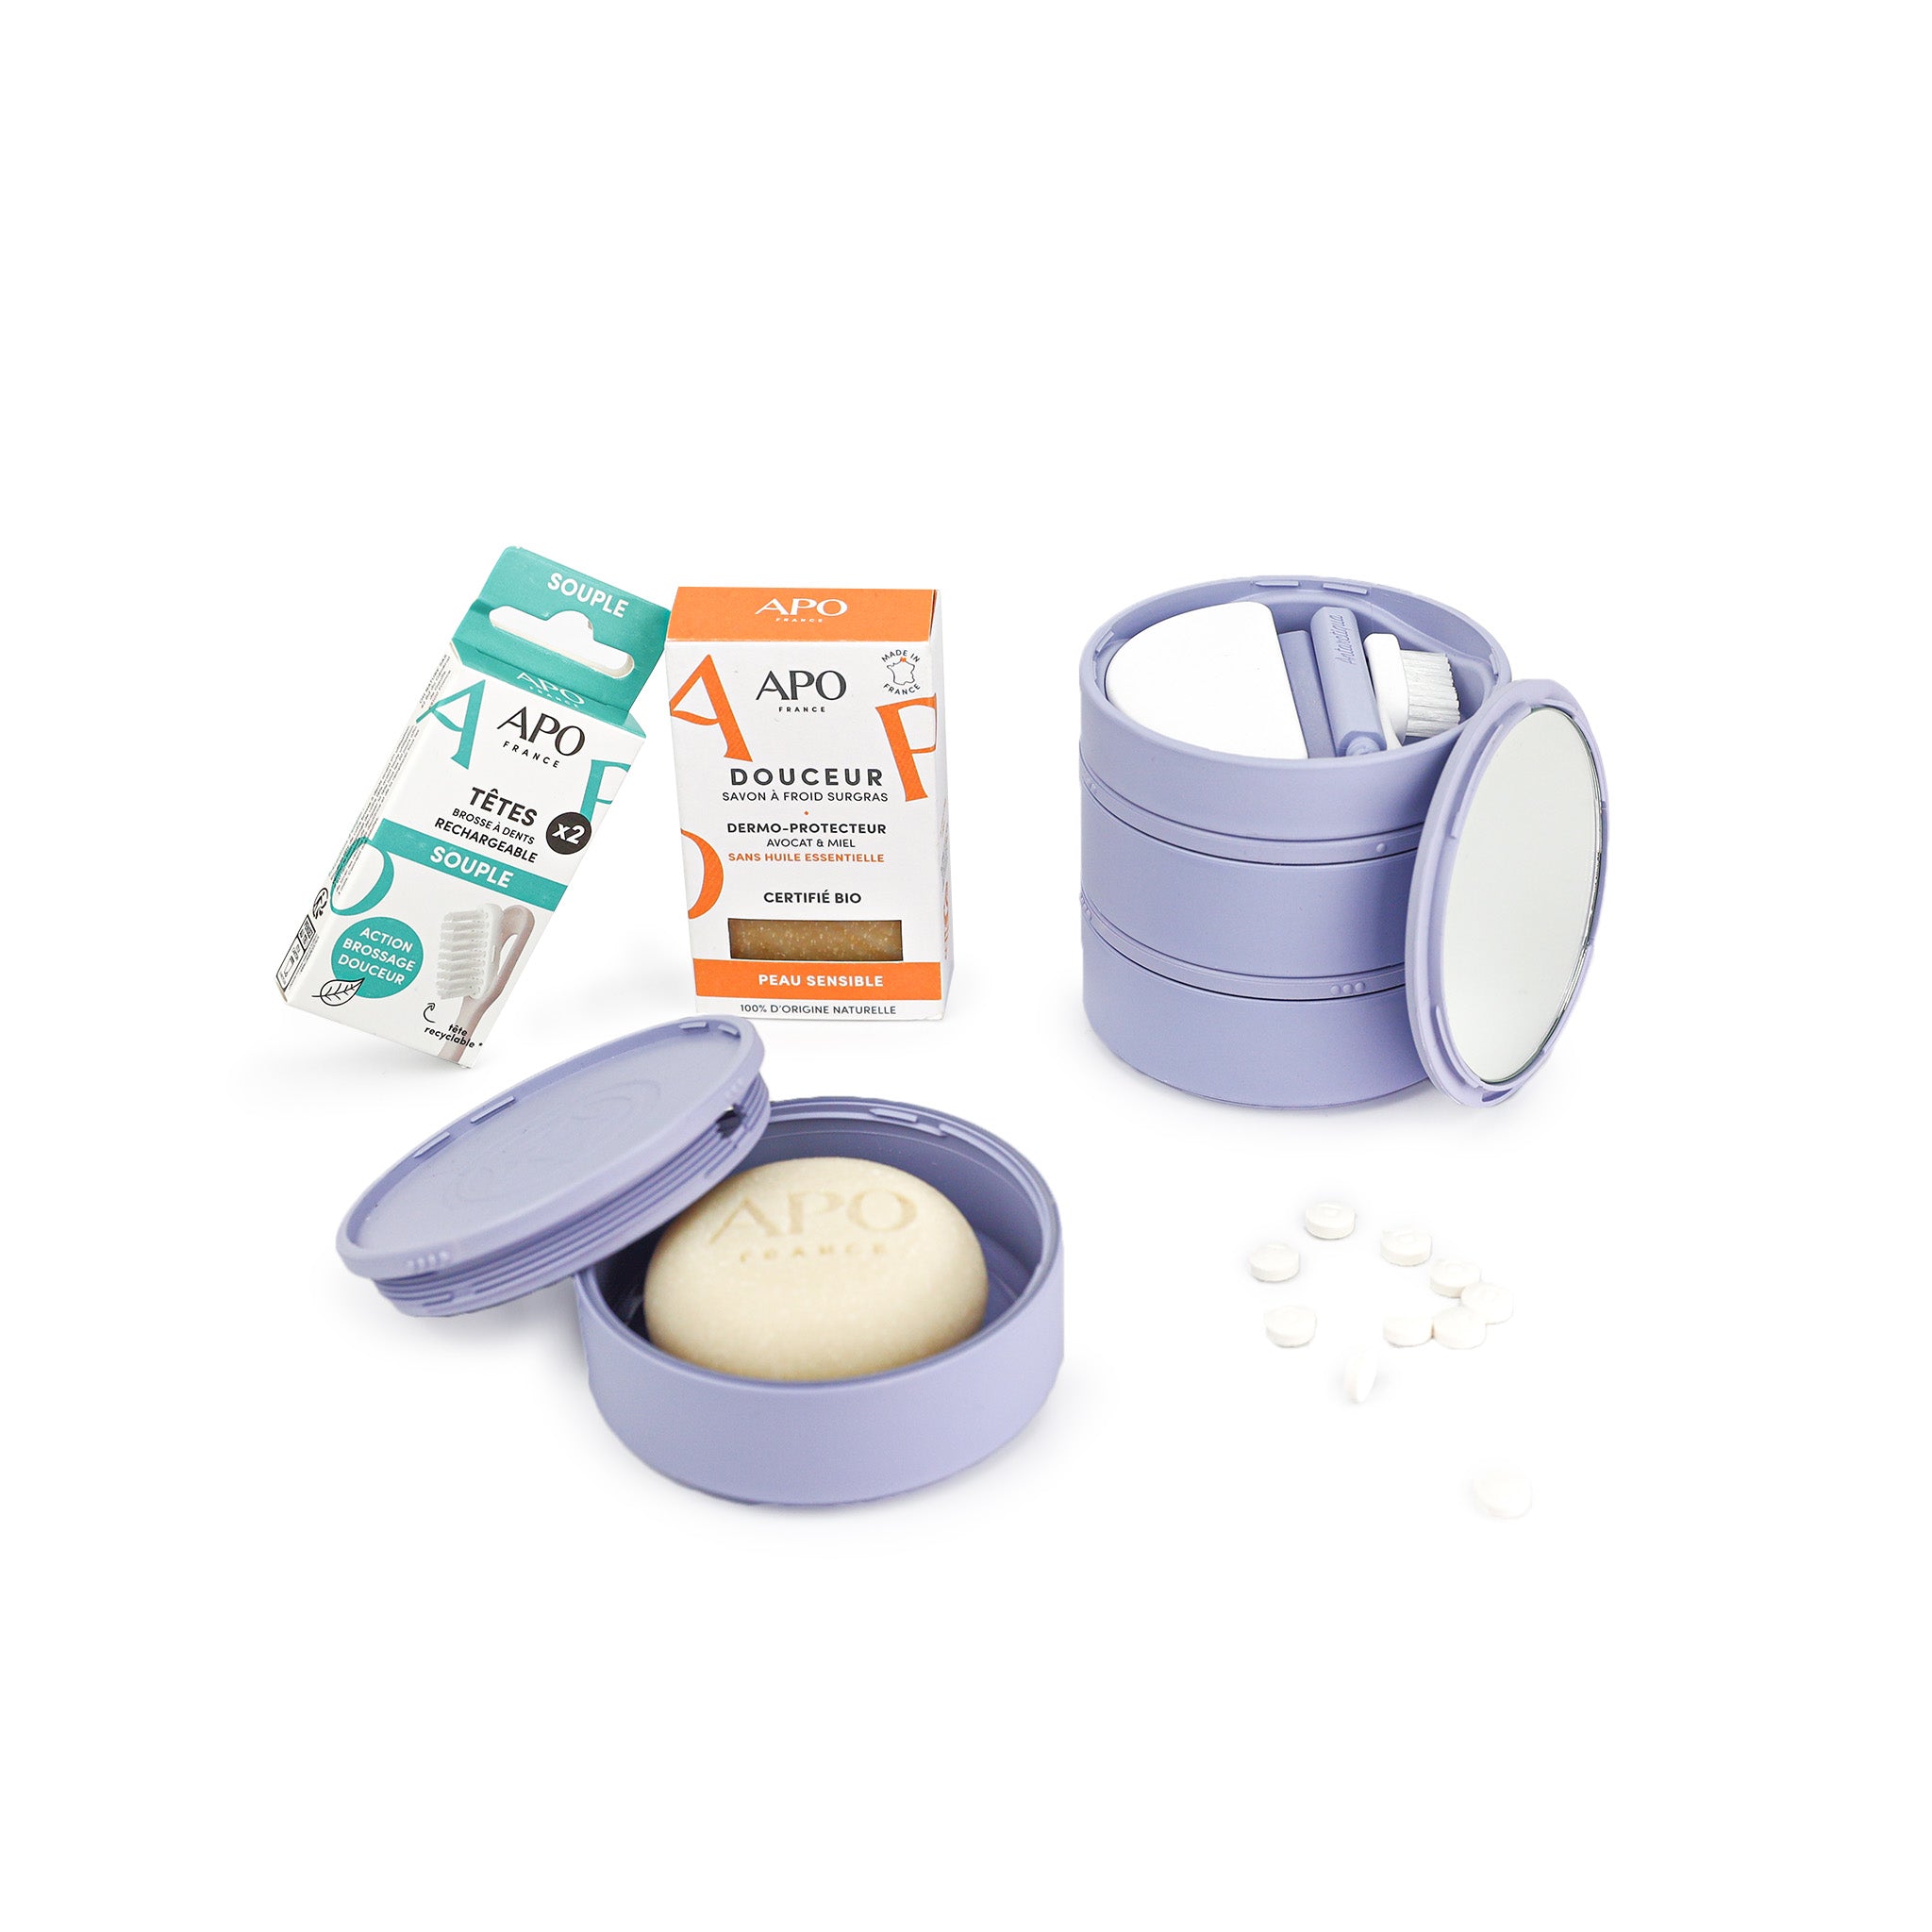 Pack IceTower Reconnaissance bleu avec ces cosmétiques : une gel douche solide, un shampoing solide, pastille et recharge de brosse à dent.